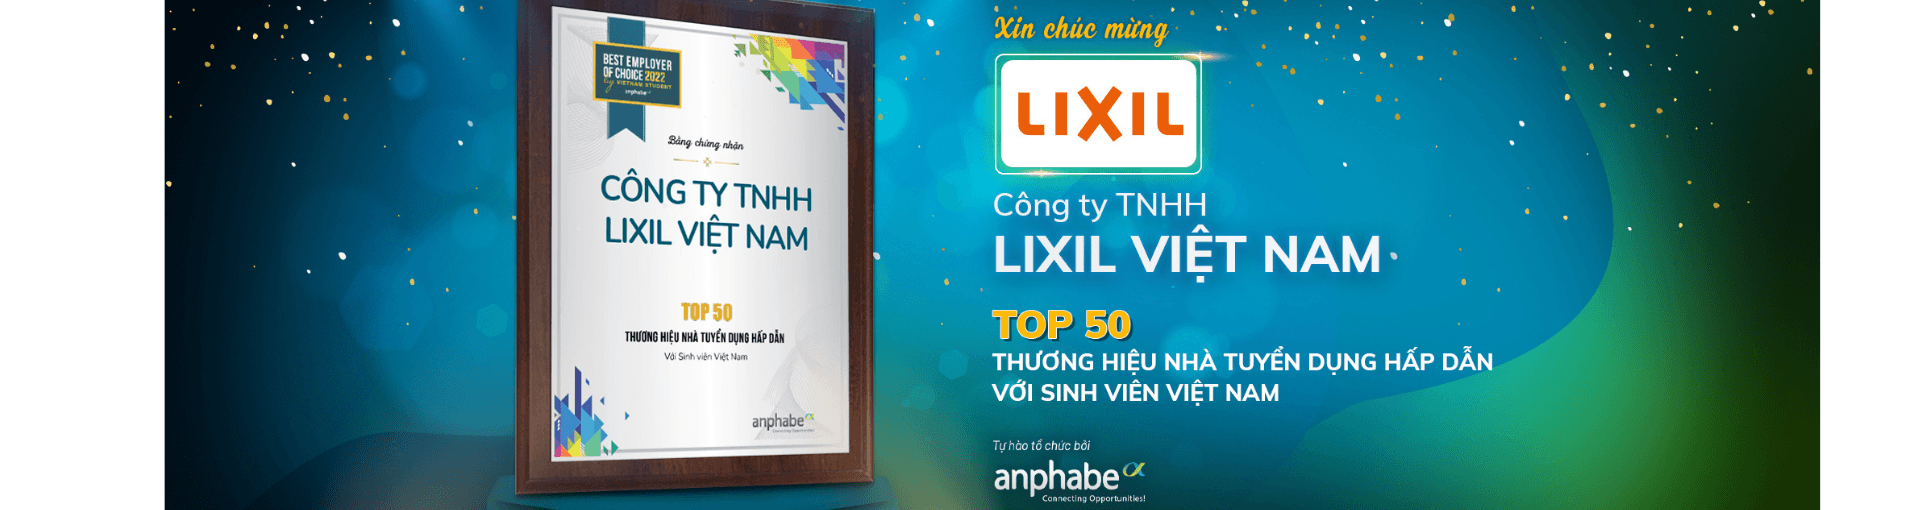 Lixil Vietnam Corporation